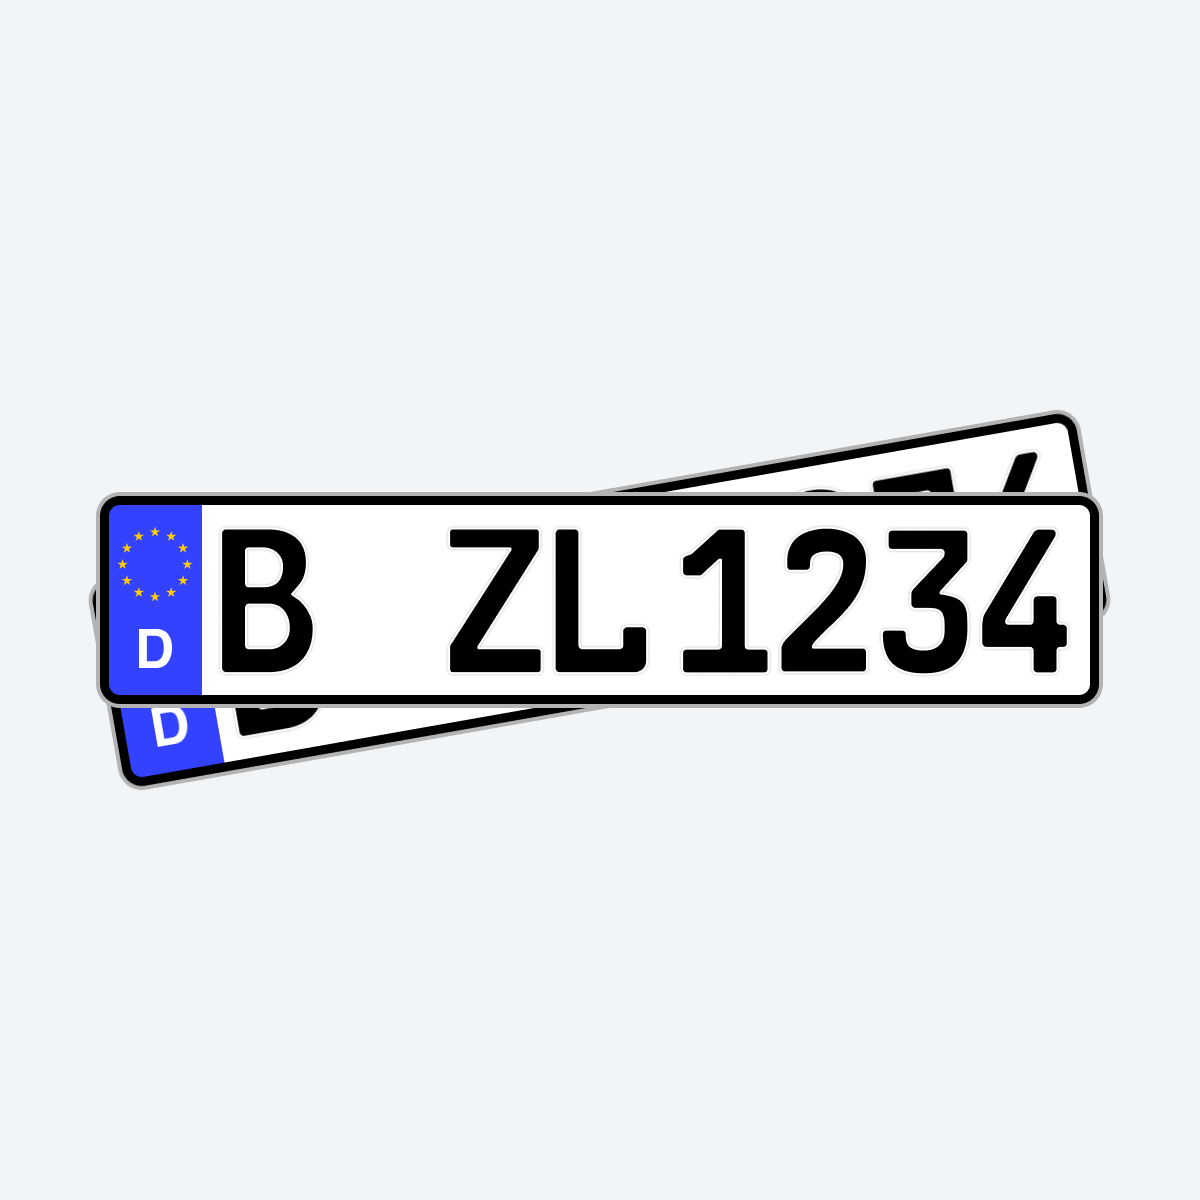 1 KFZ Kennzeichen Standard, 520x110mm, Nummernschilder, Autokennzeichen  DHL